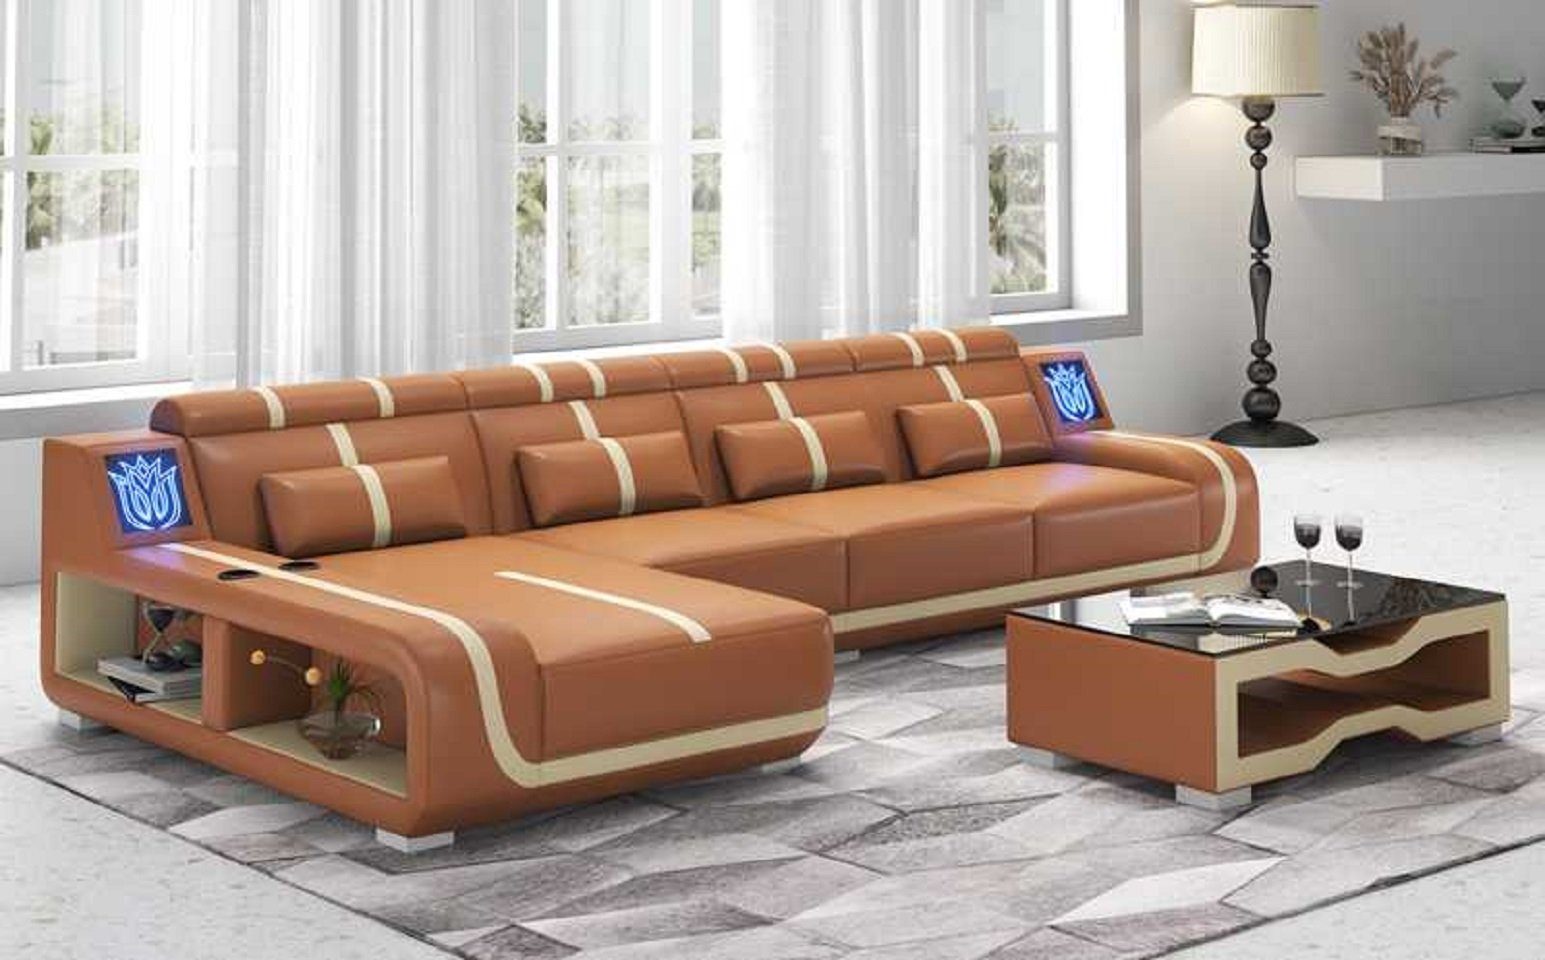 Made Braun Design Liege 3 JVmoebel Teile, Europe couchen, Ecksofa Modern in Couch Form Sofa L Ecksofa